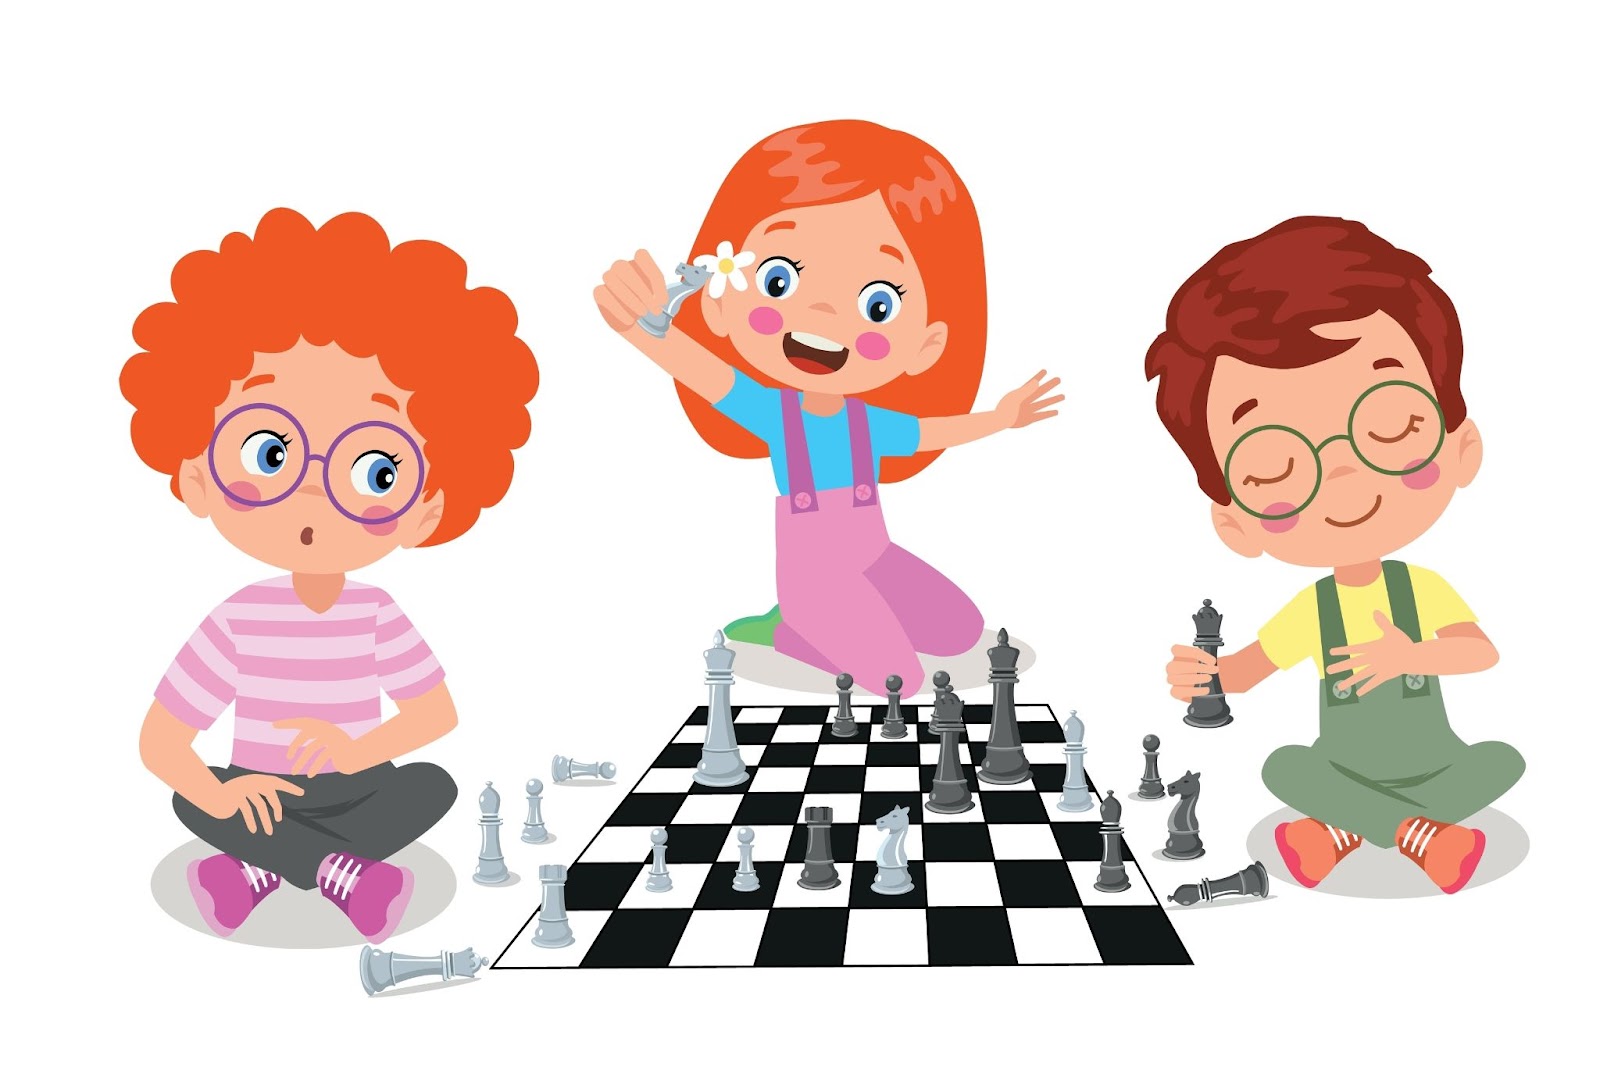 משחקי חשיבה לילדים בני 10 כמו שחמט מציעים הזדמנויות להתפתחות קוגניטיבית מתקדמת